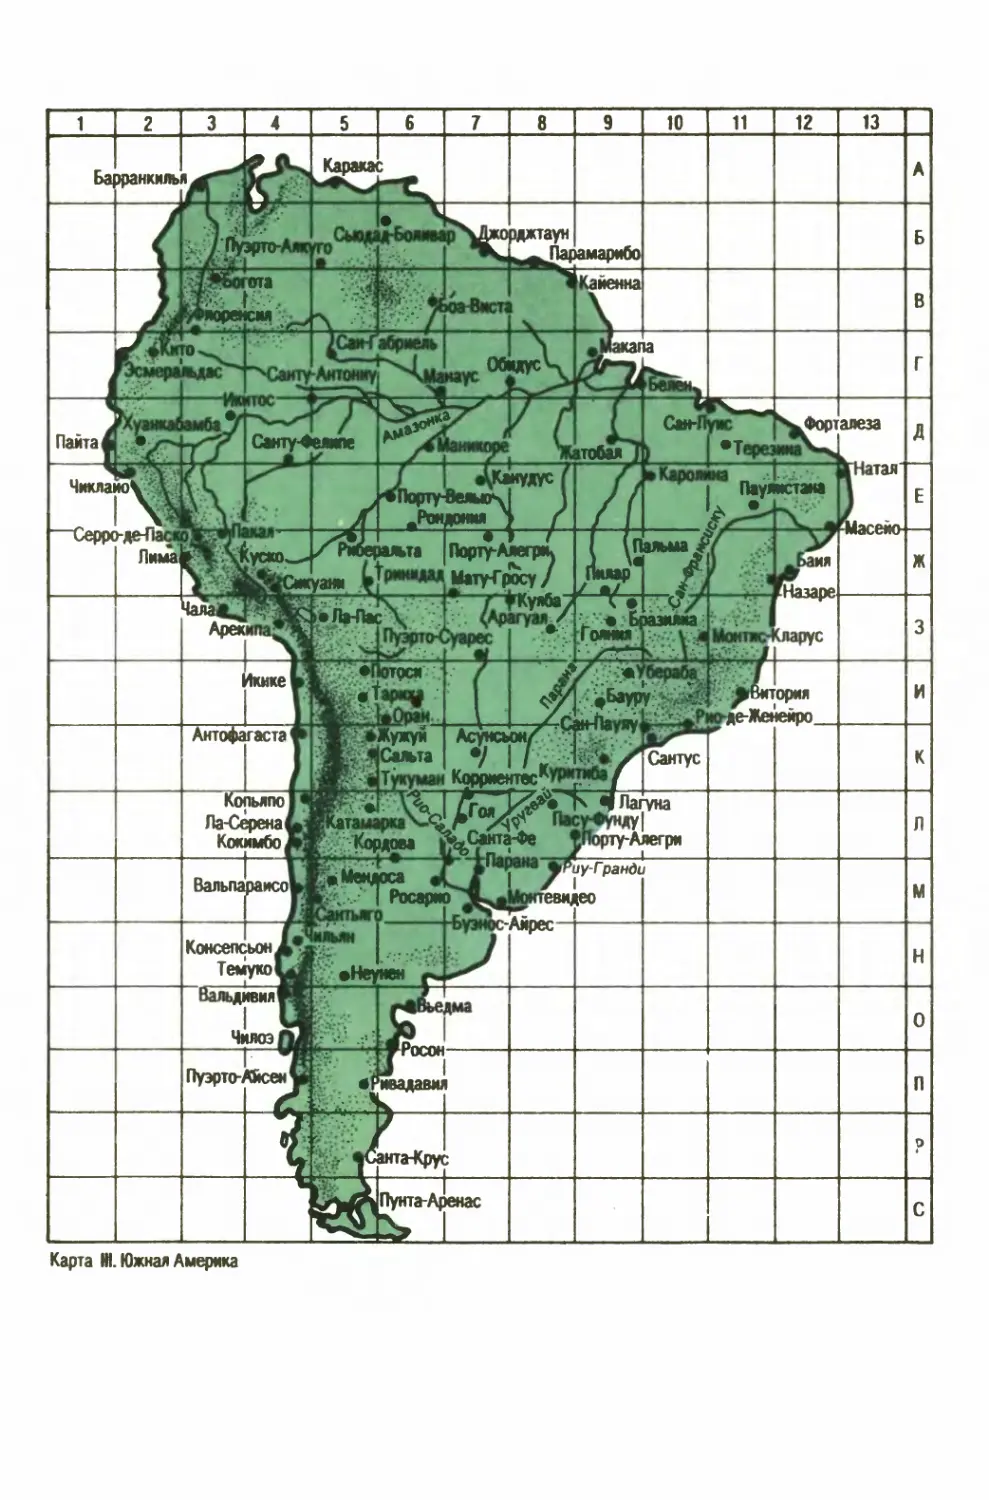 II. Южная Америка